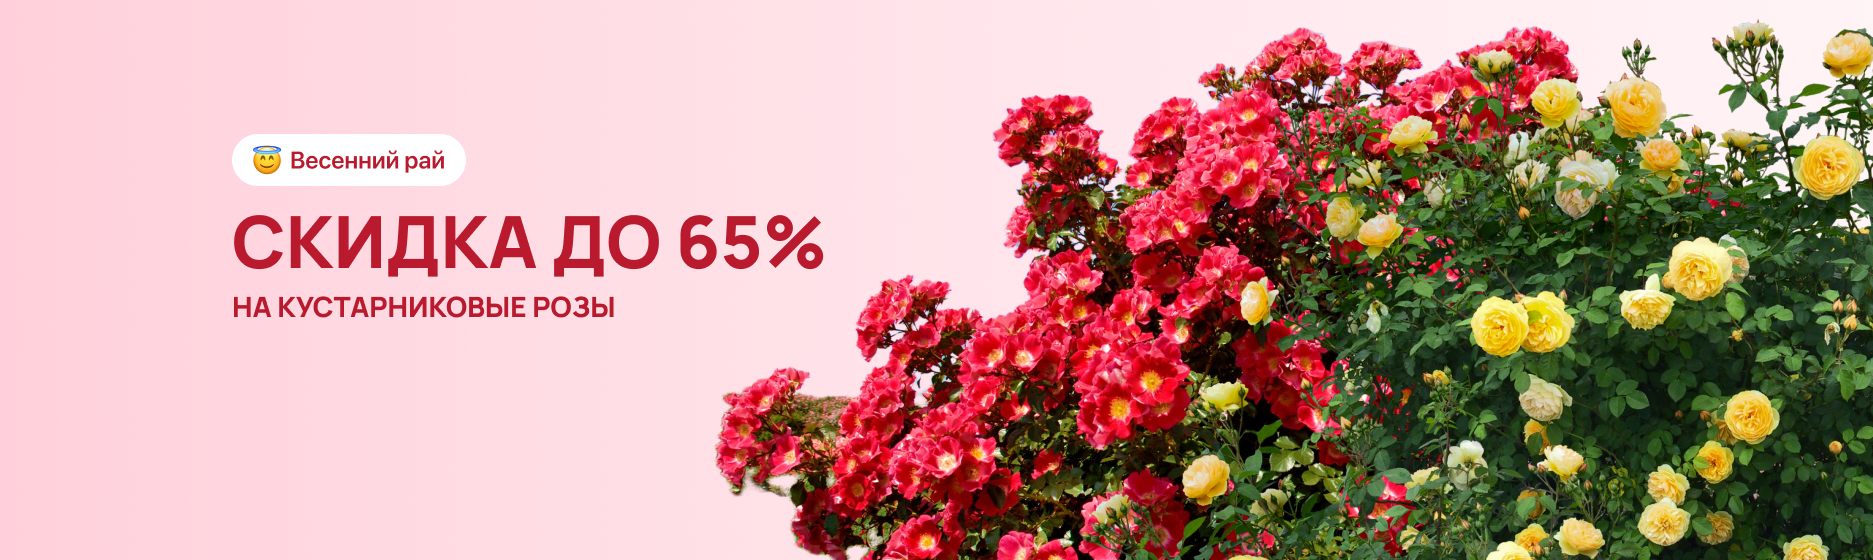 Кустарниковые розы со скидкой 65%